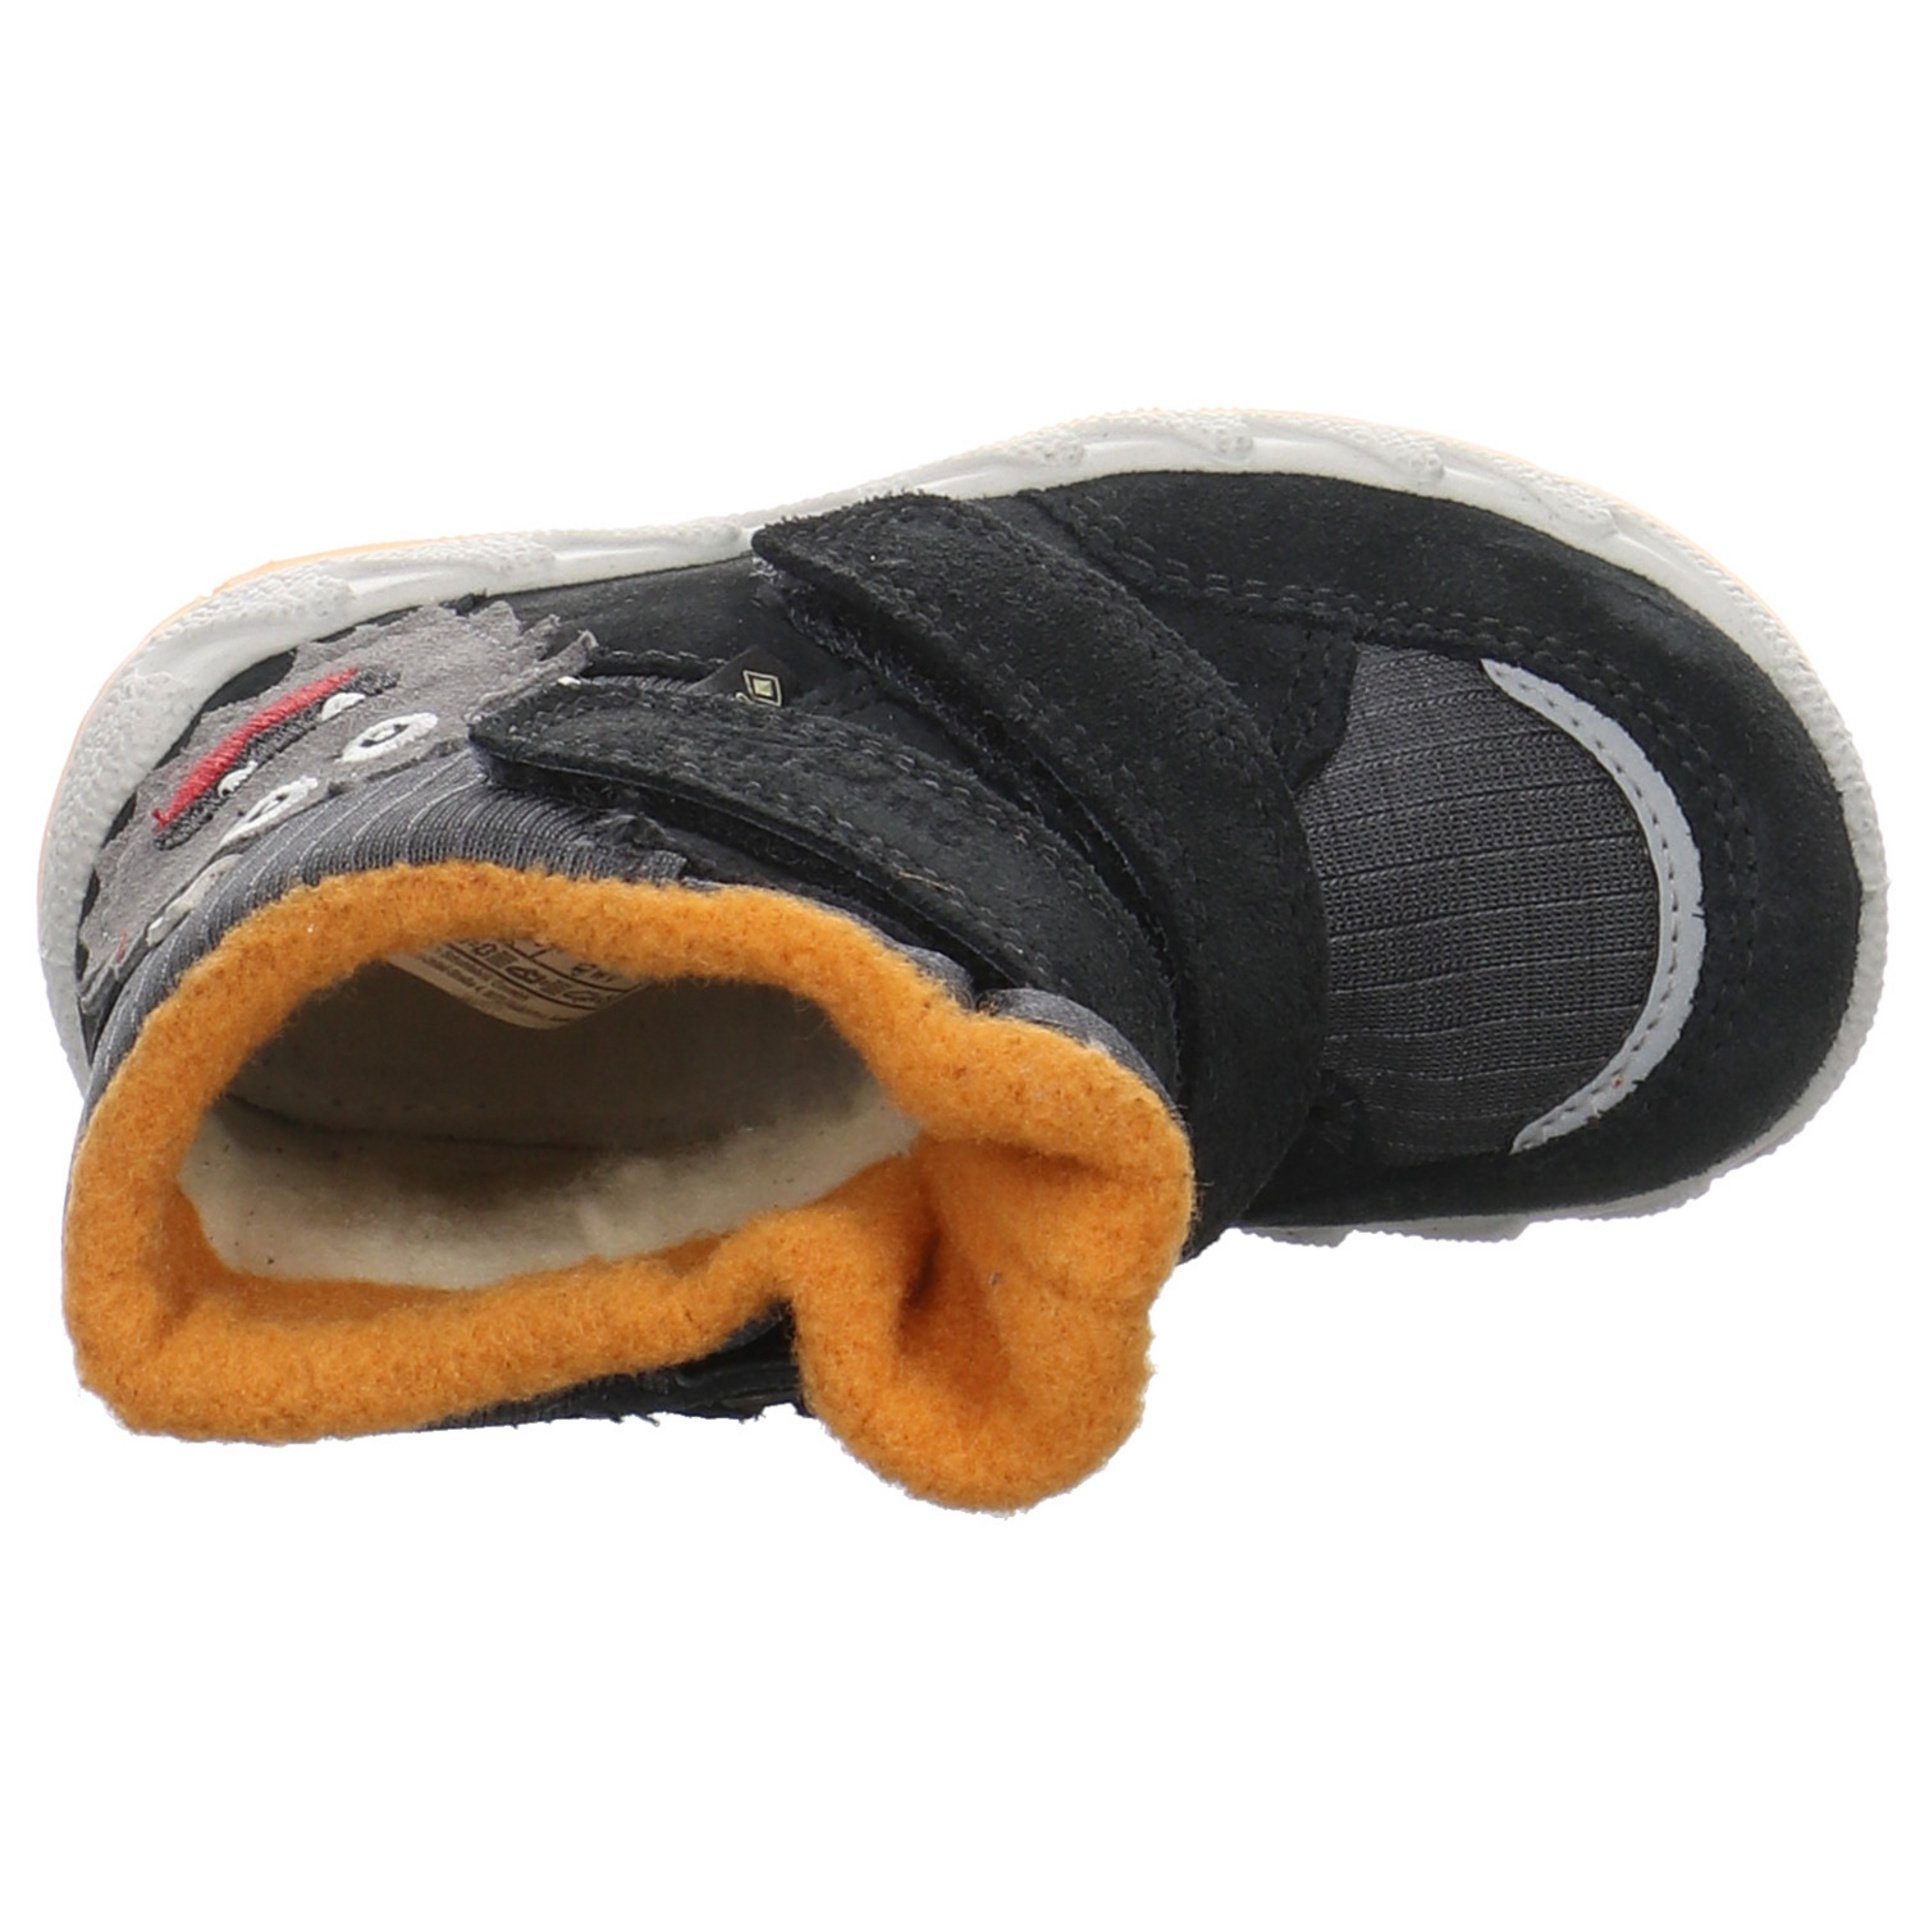 grau Baby gelb Lauflernschuh Icebird Boots Superfit Lauflernschuhe Krabbelschuhe Leder-/Textilkombination